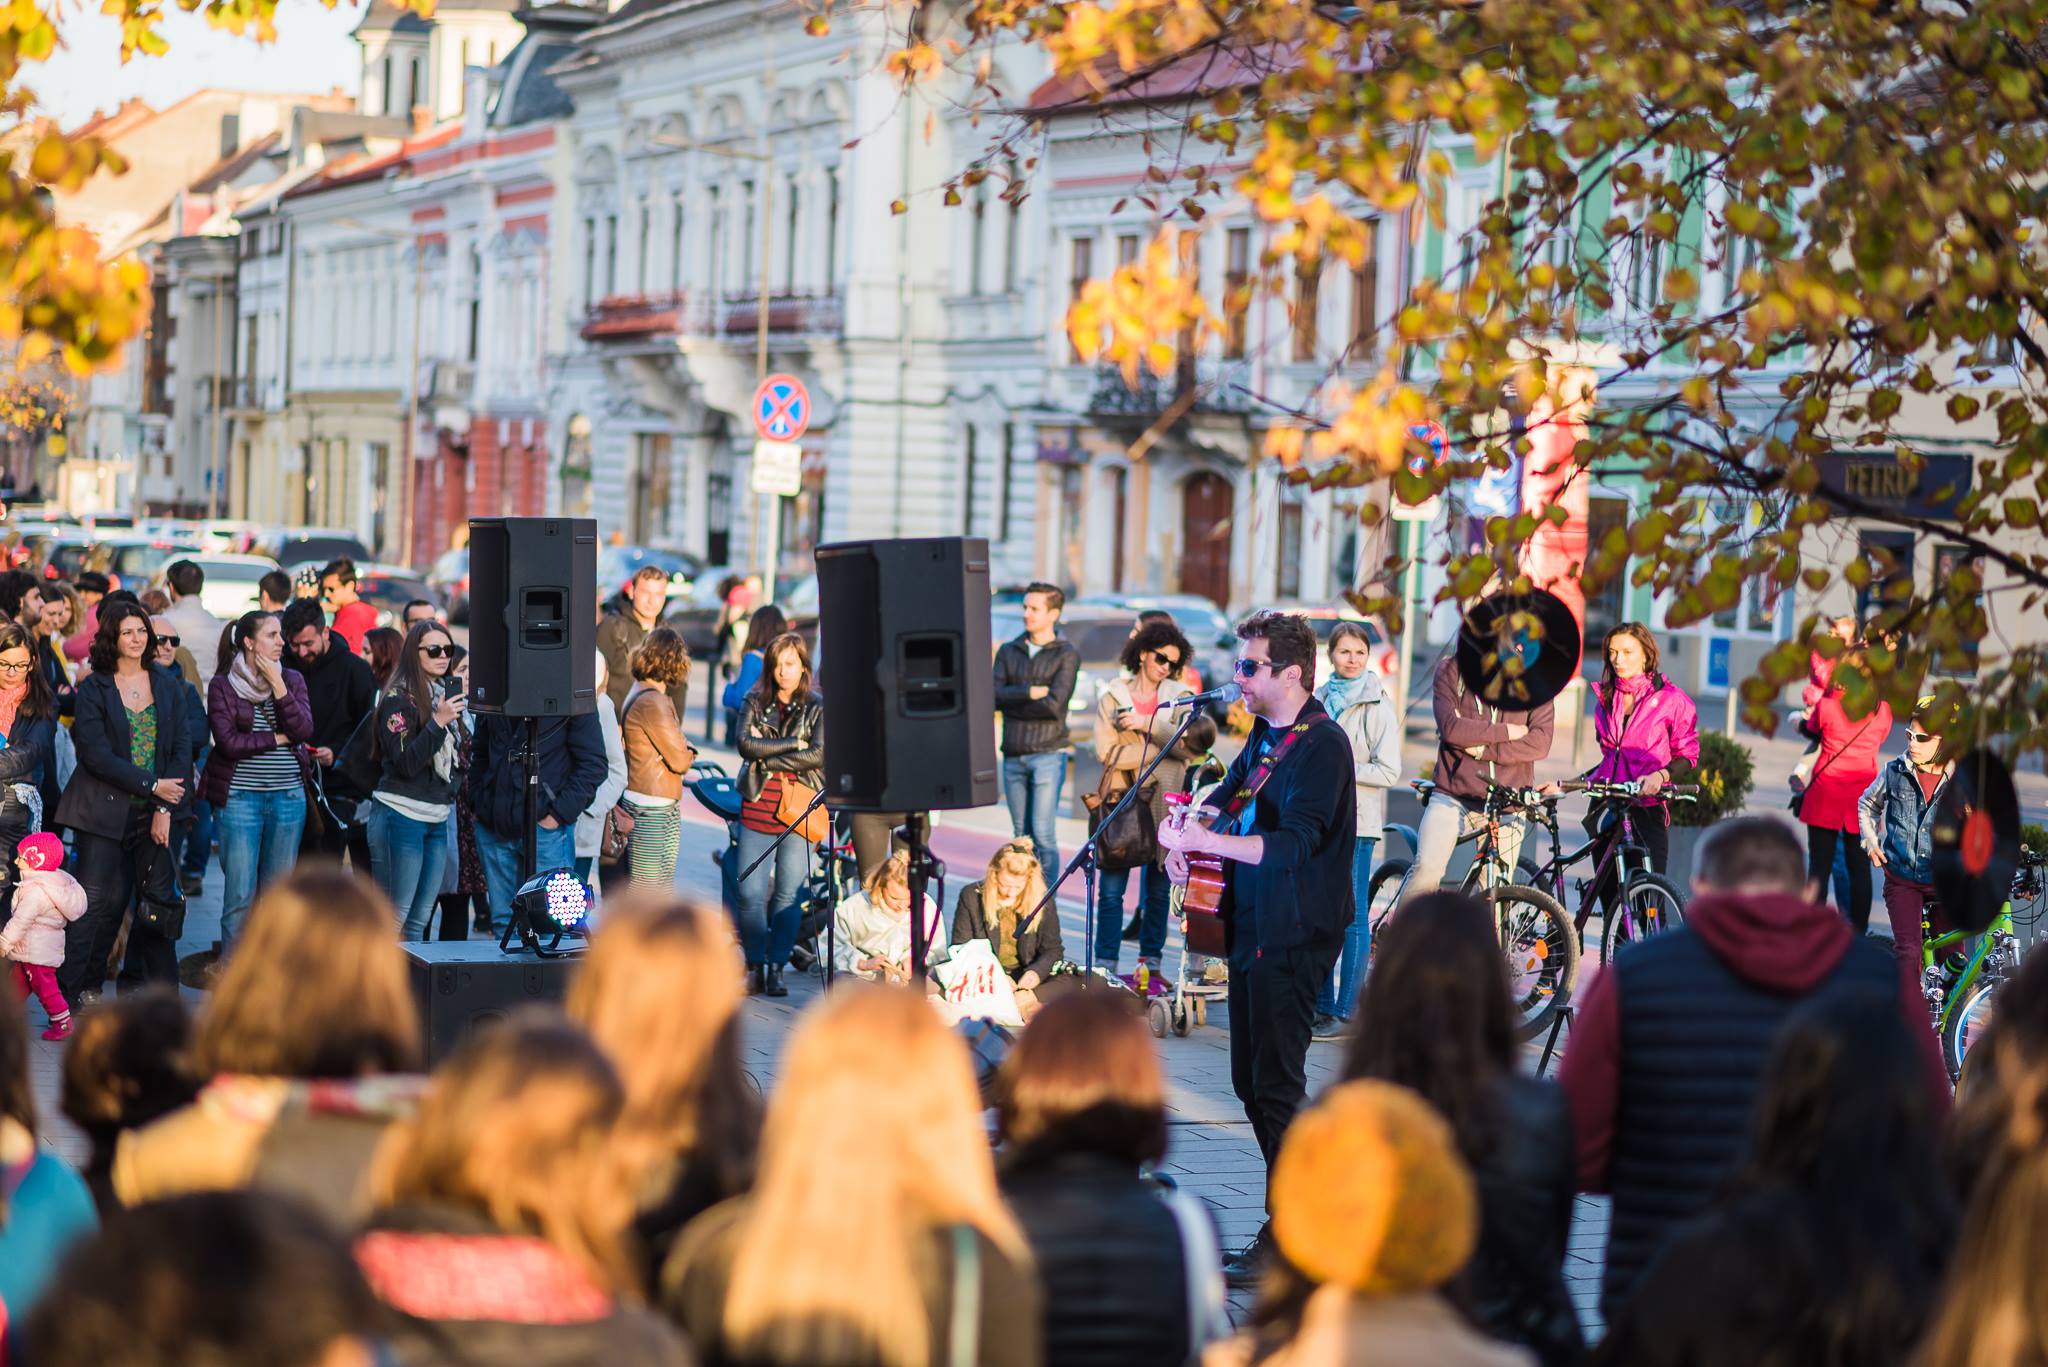 Arta stradala a cucerit Clujul! Peste 17.000 de persoane au participat in acest weekend la Jazz in the Street 2017